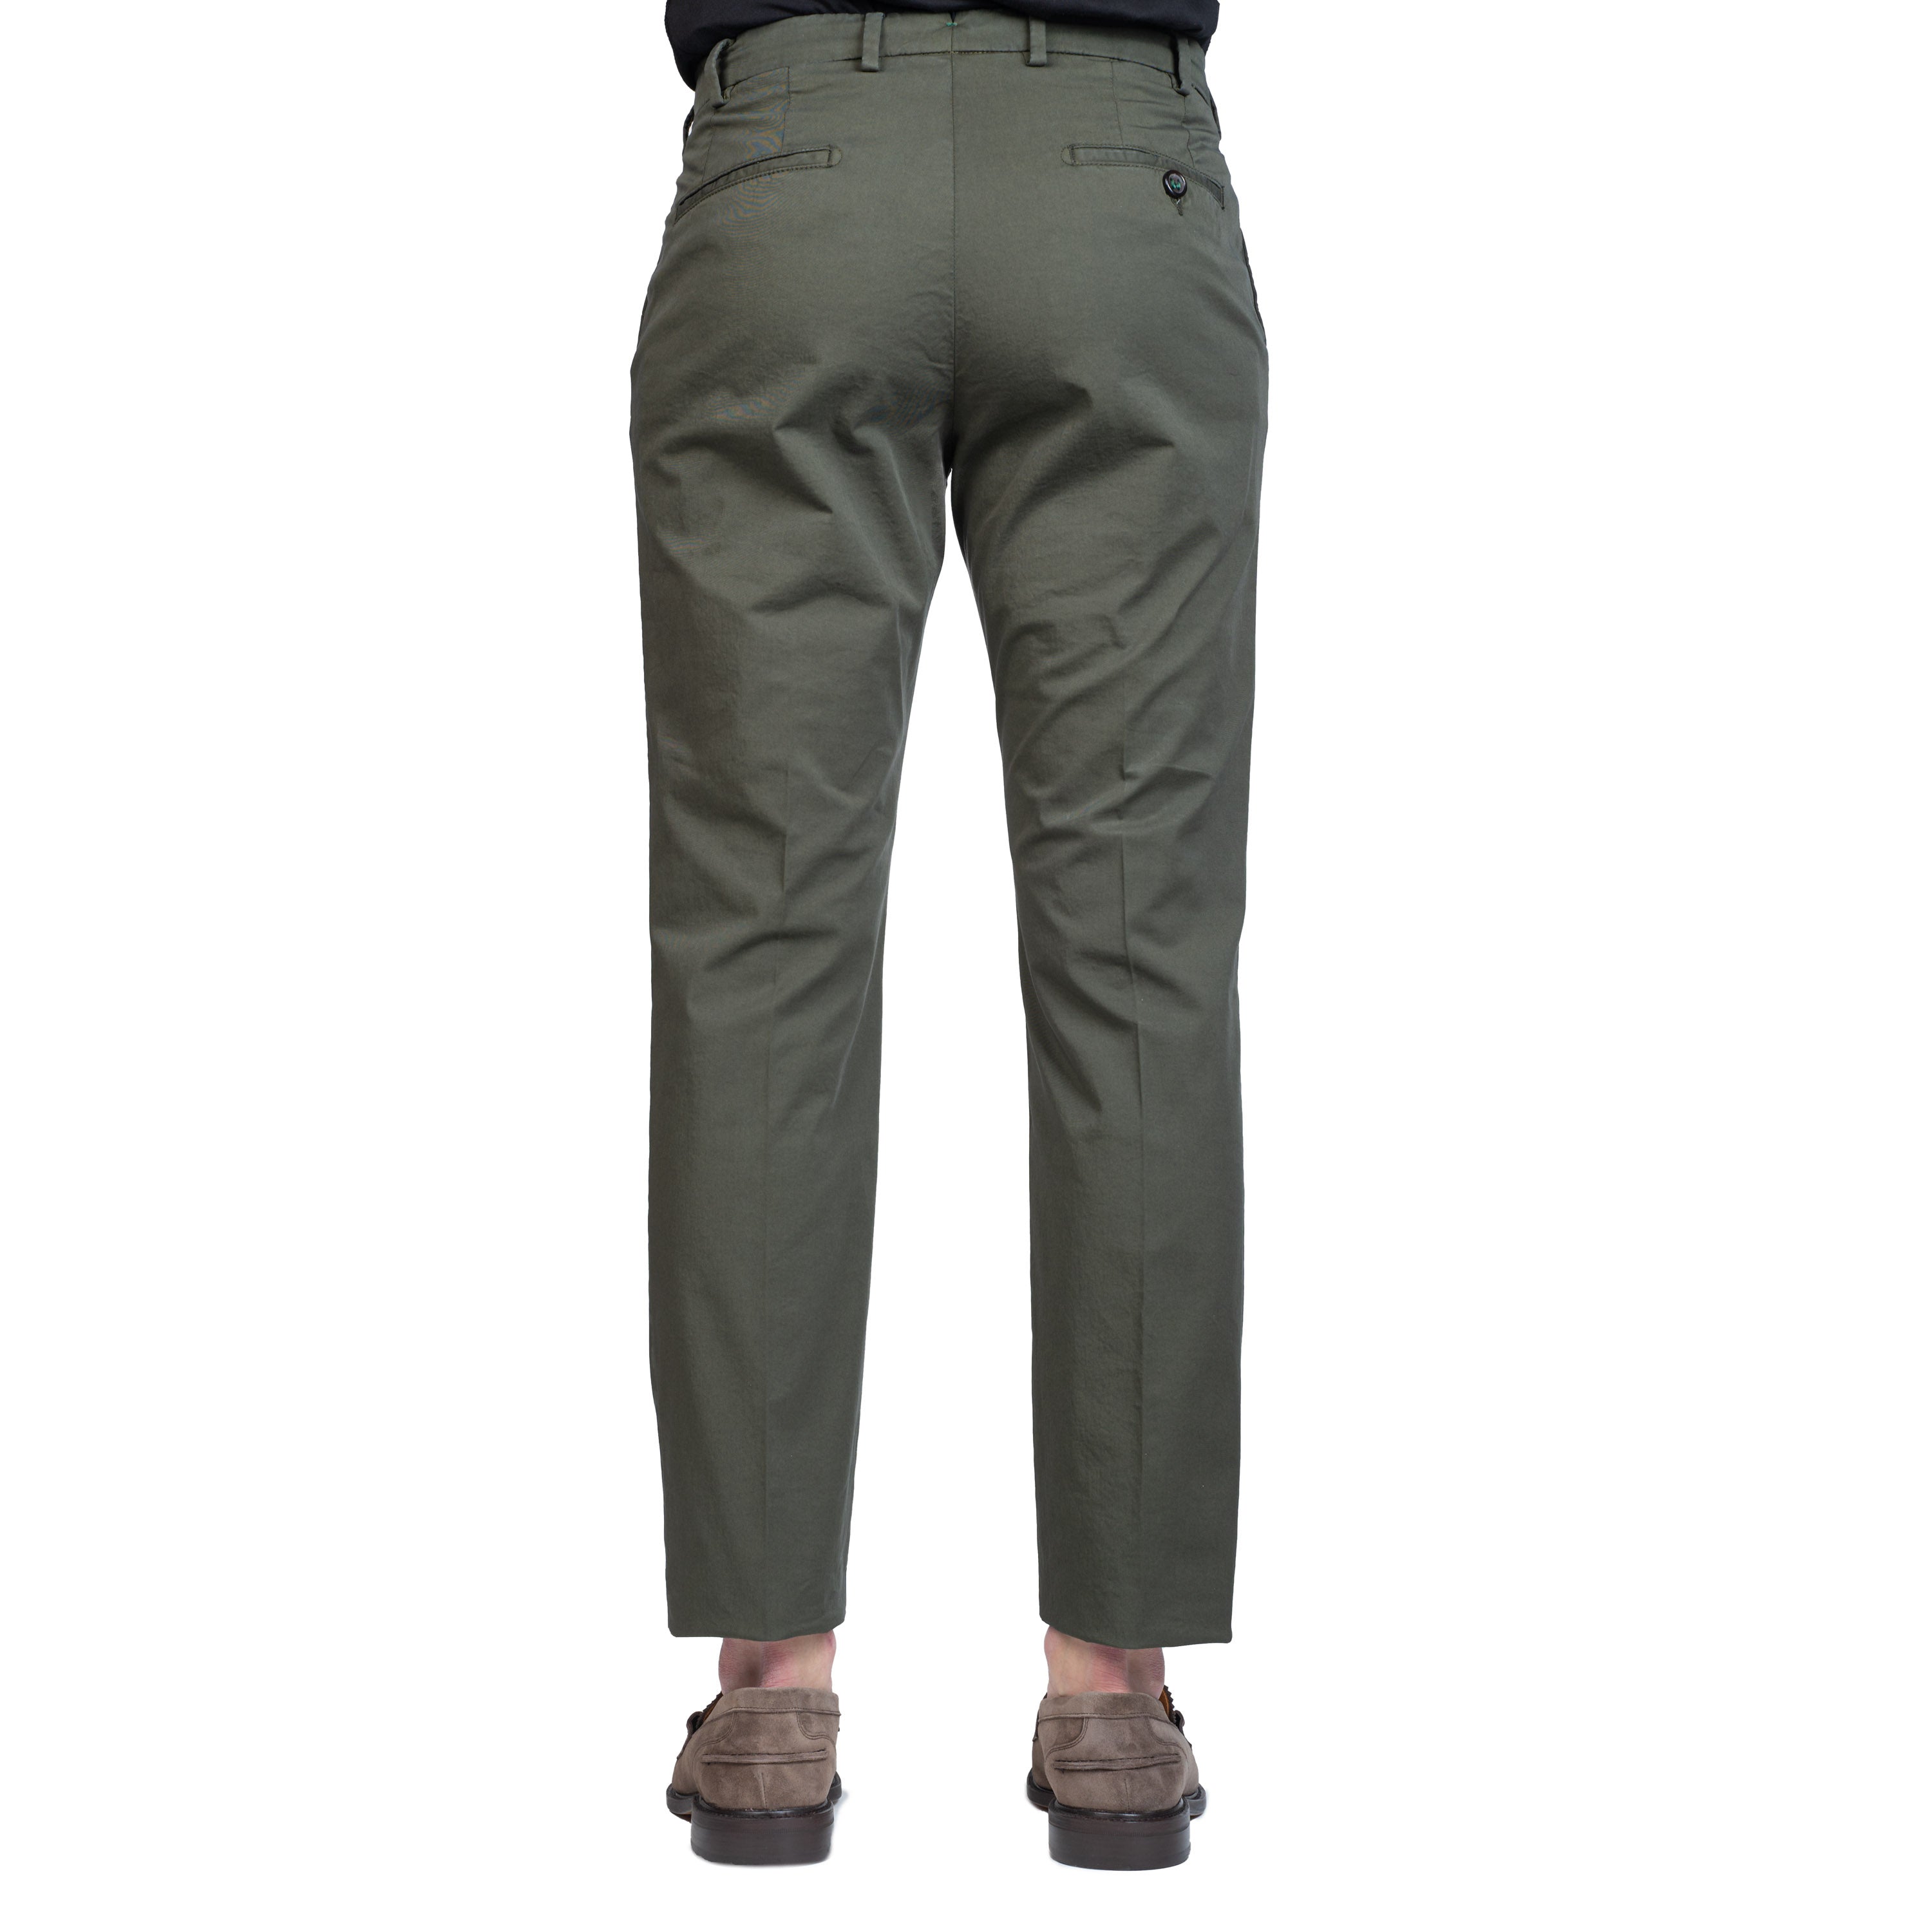 Pantalone BERWICH MILITARE TS0440XRETRO - Avant-gardeandria